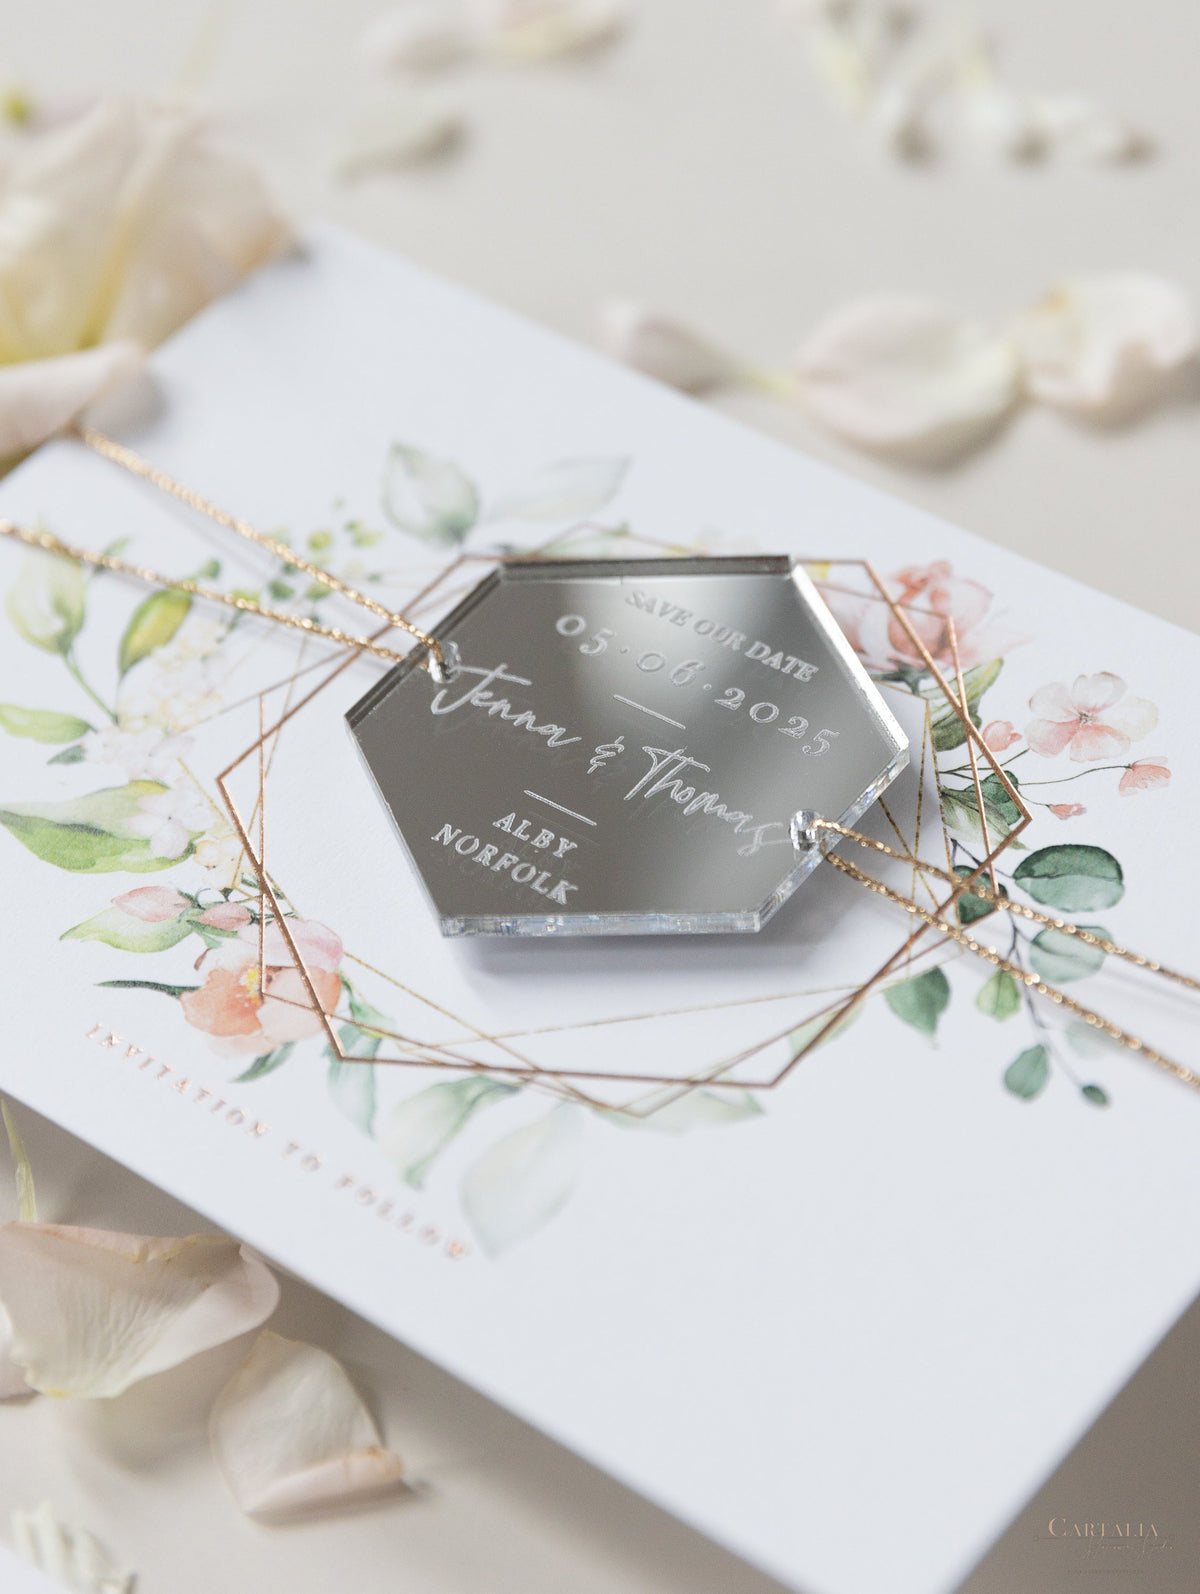 Aimant miroir hexagonal Gravure personnalisée Sauver la carte de date avec du vrai papier d'aluminium